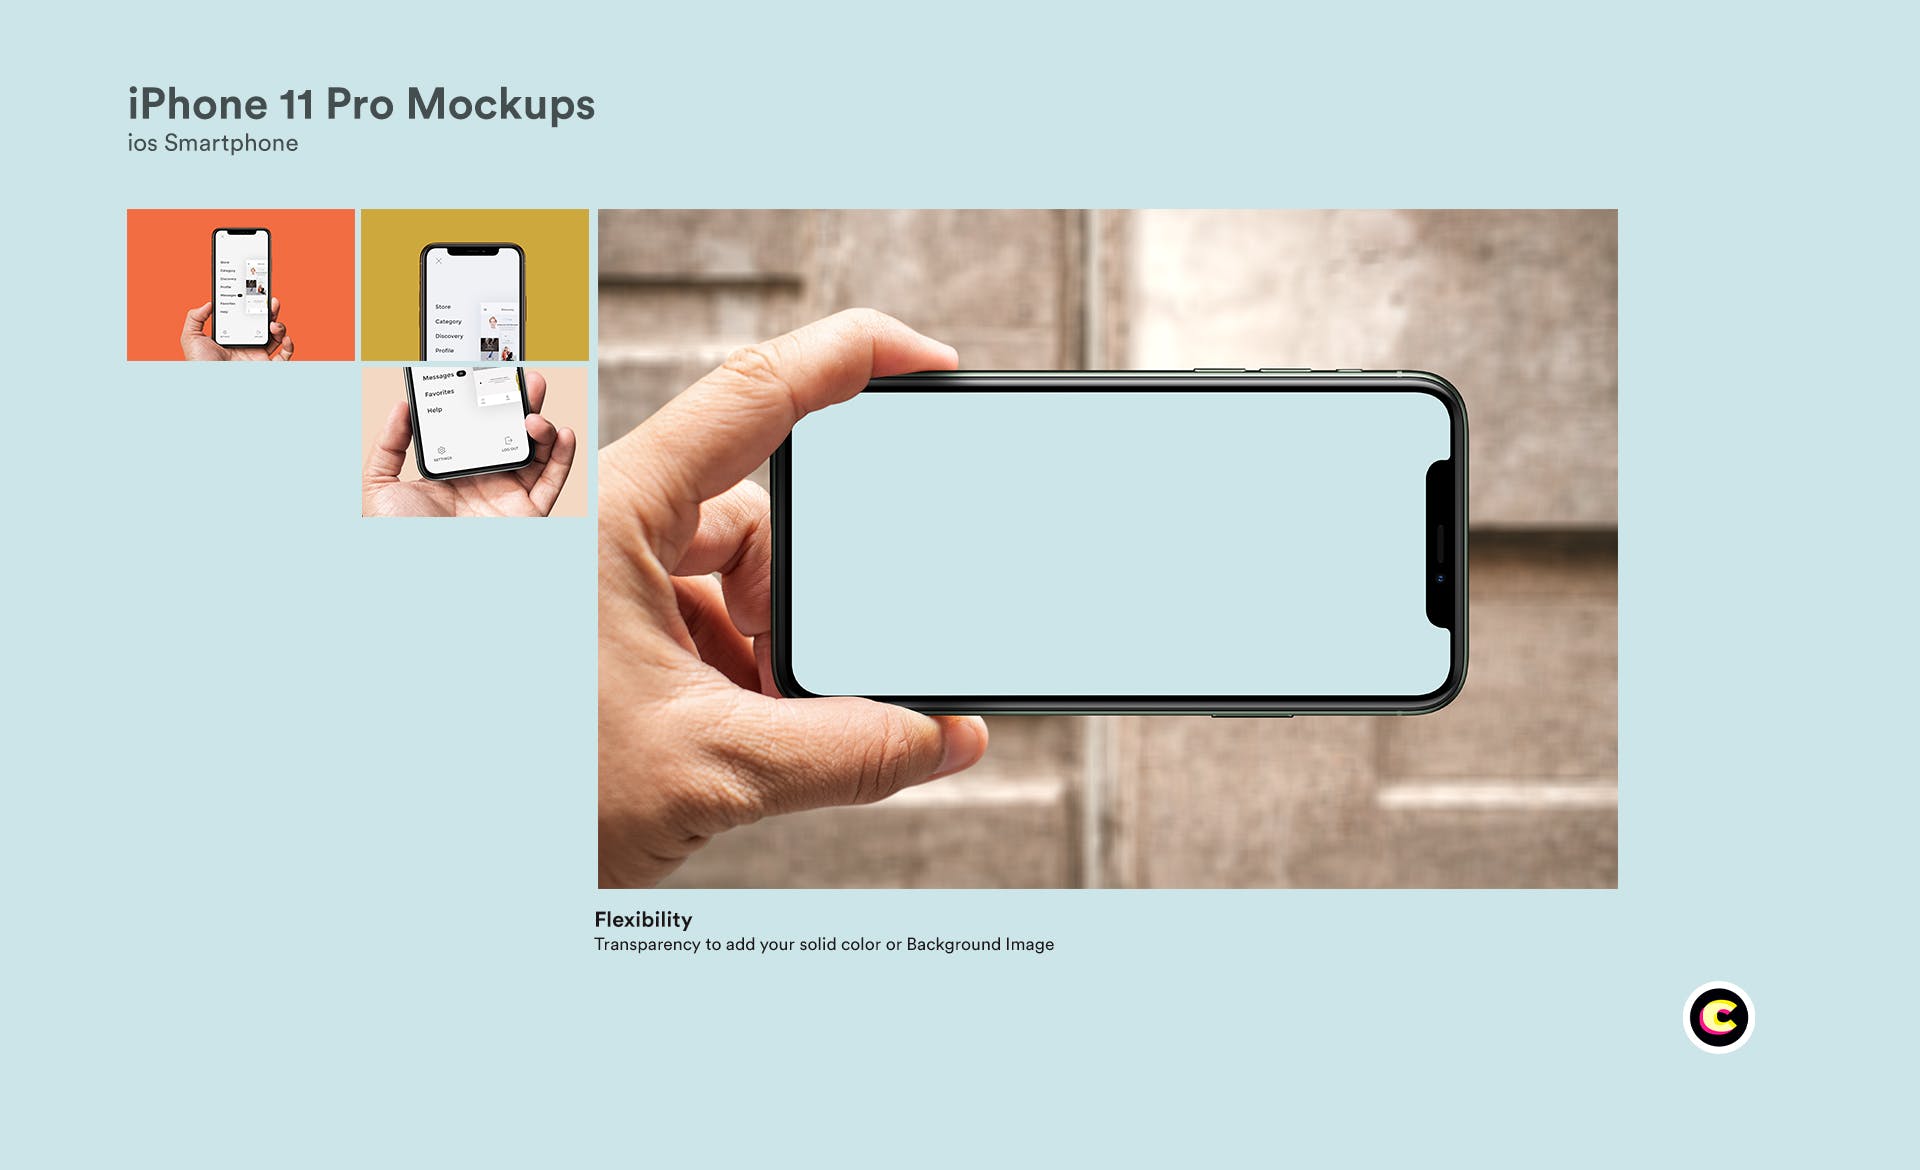 iPhone 11 Pro智能手机屏幕演示预览第一素材精选样机 iPhone 11 Pro Mockups插图(3)